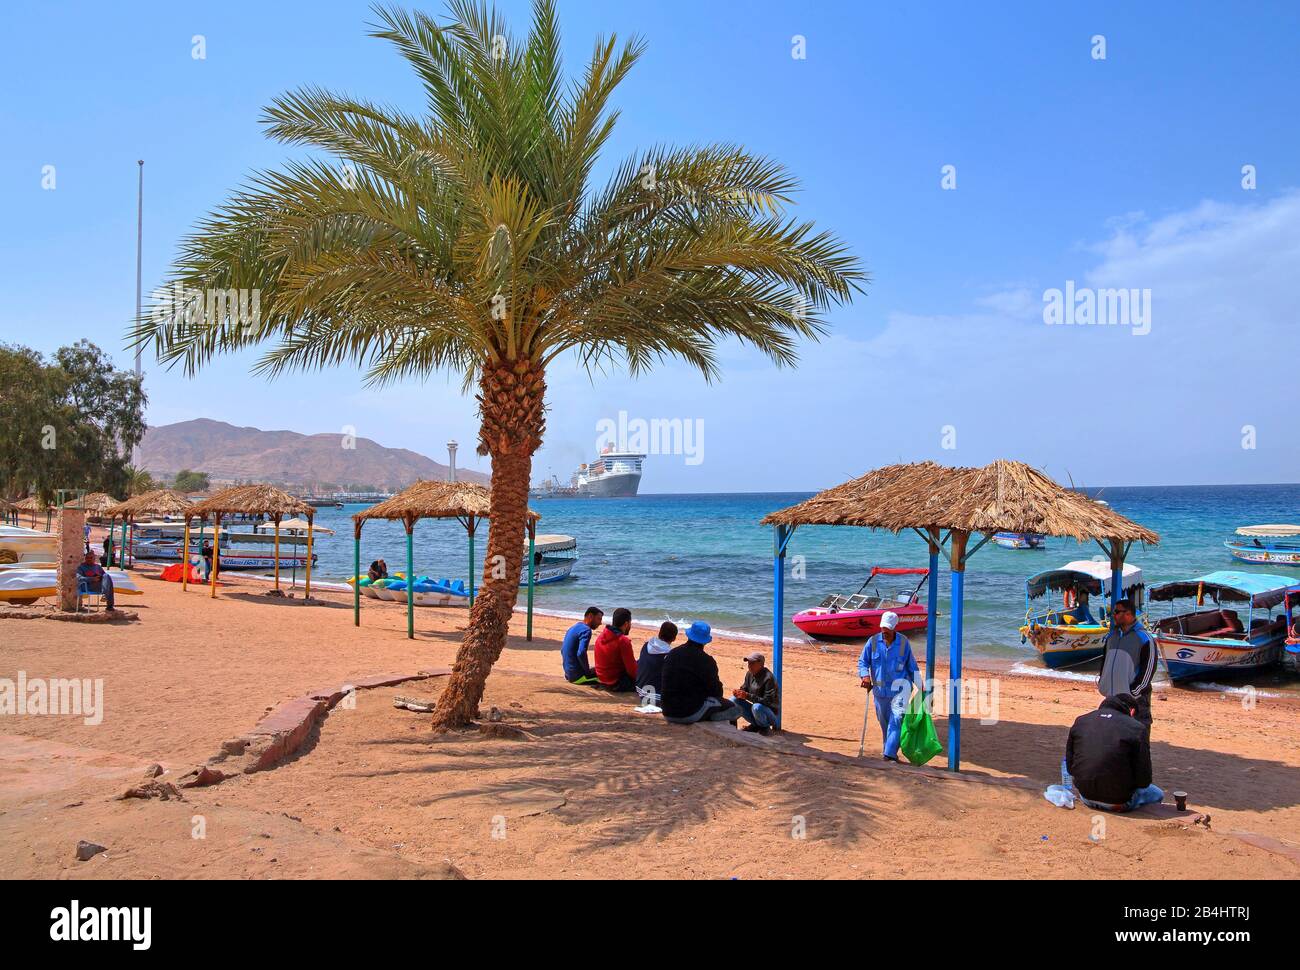 Einheimische am Stadtstrand mit Ausflugsbooten und Blick auf den Akaba Akaba Hafen, Golf von Akaba, Rotes Meer, Jordanien Stockfoto